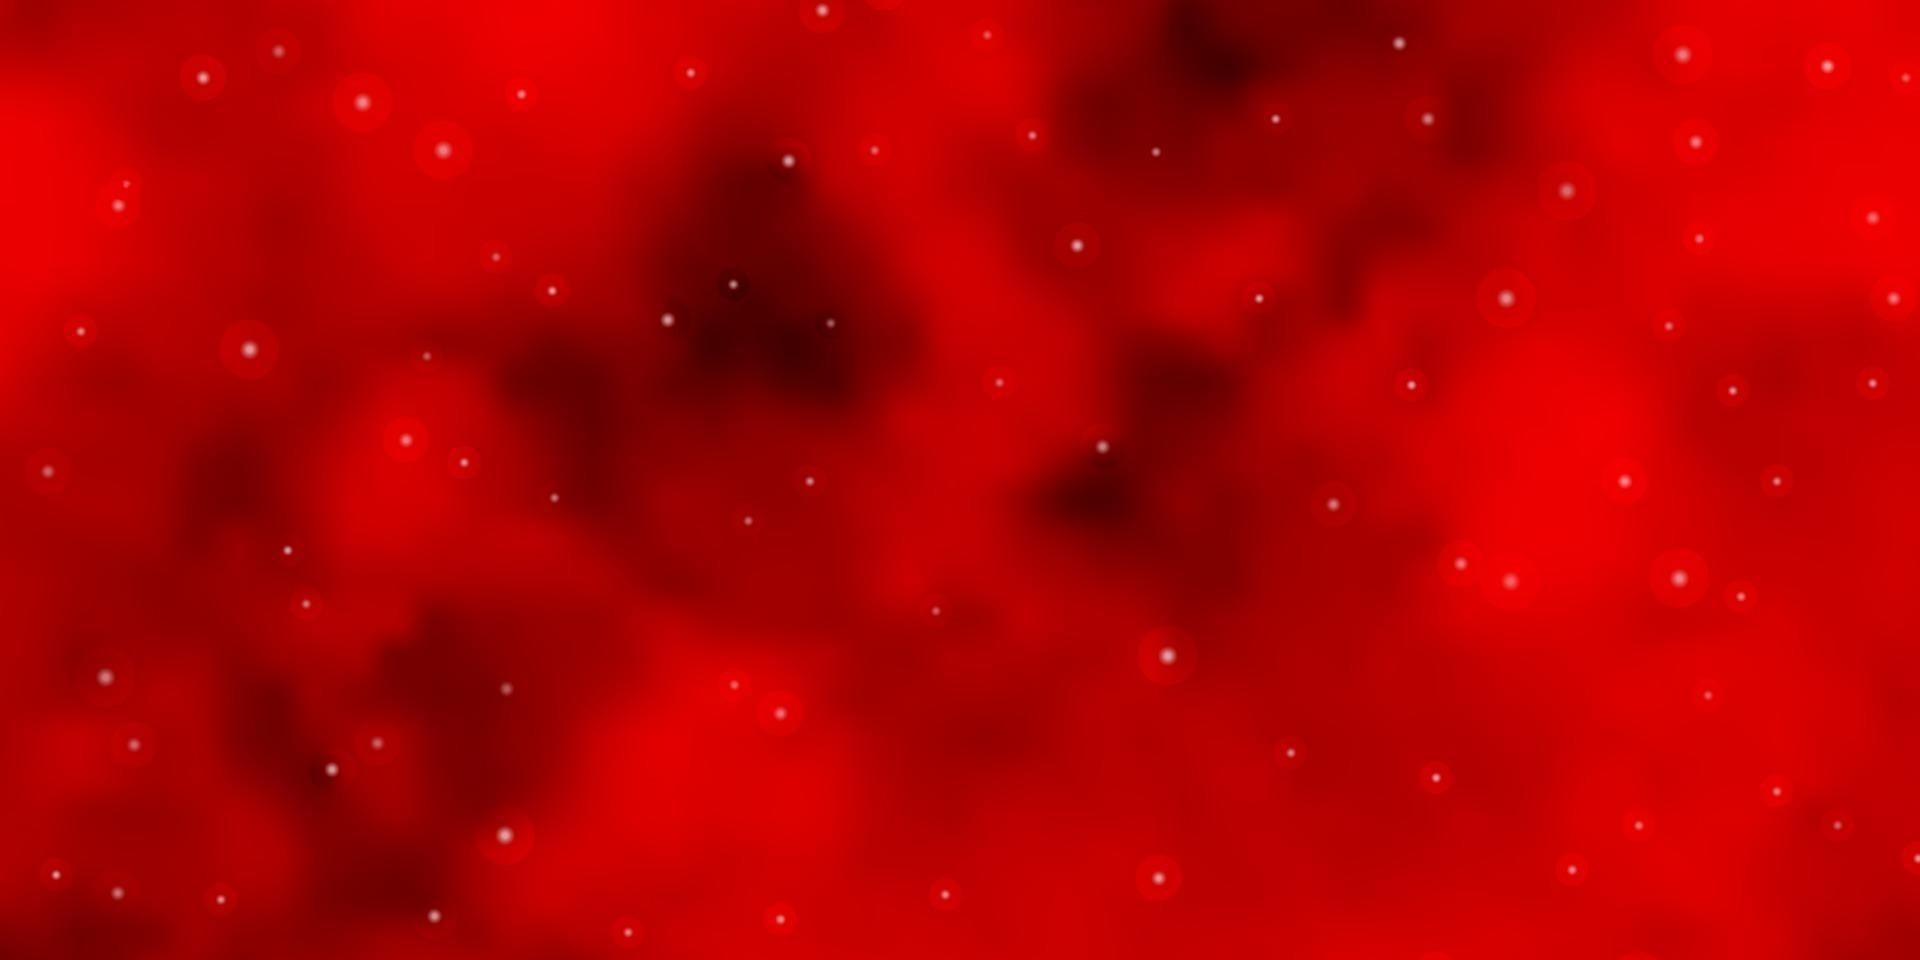 trama vettoriale rosso chiaro con bellissime stelle.